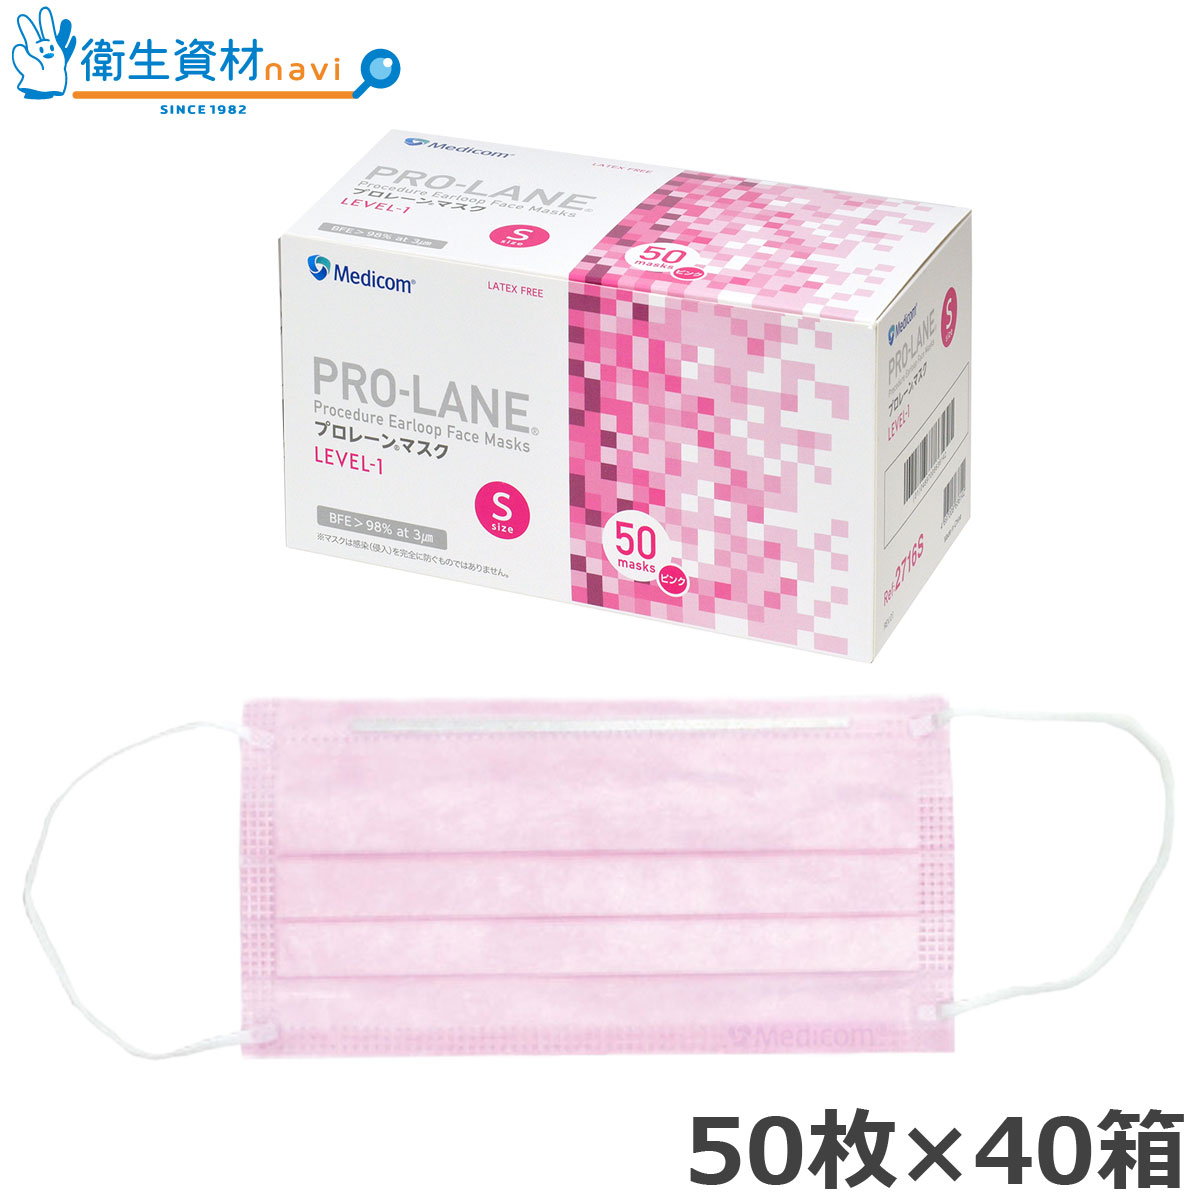 PRO-LANE(プロレーン) マスク LEVEL-1 ピンク Sサイズ PLE002716S (2,000枚)